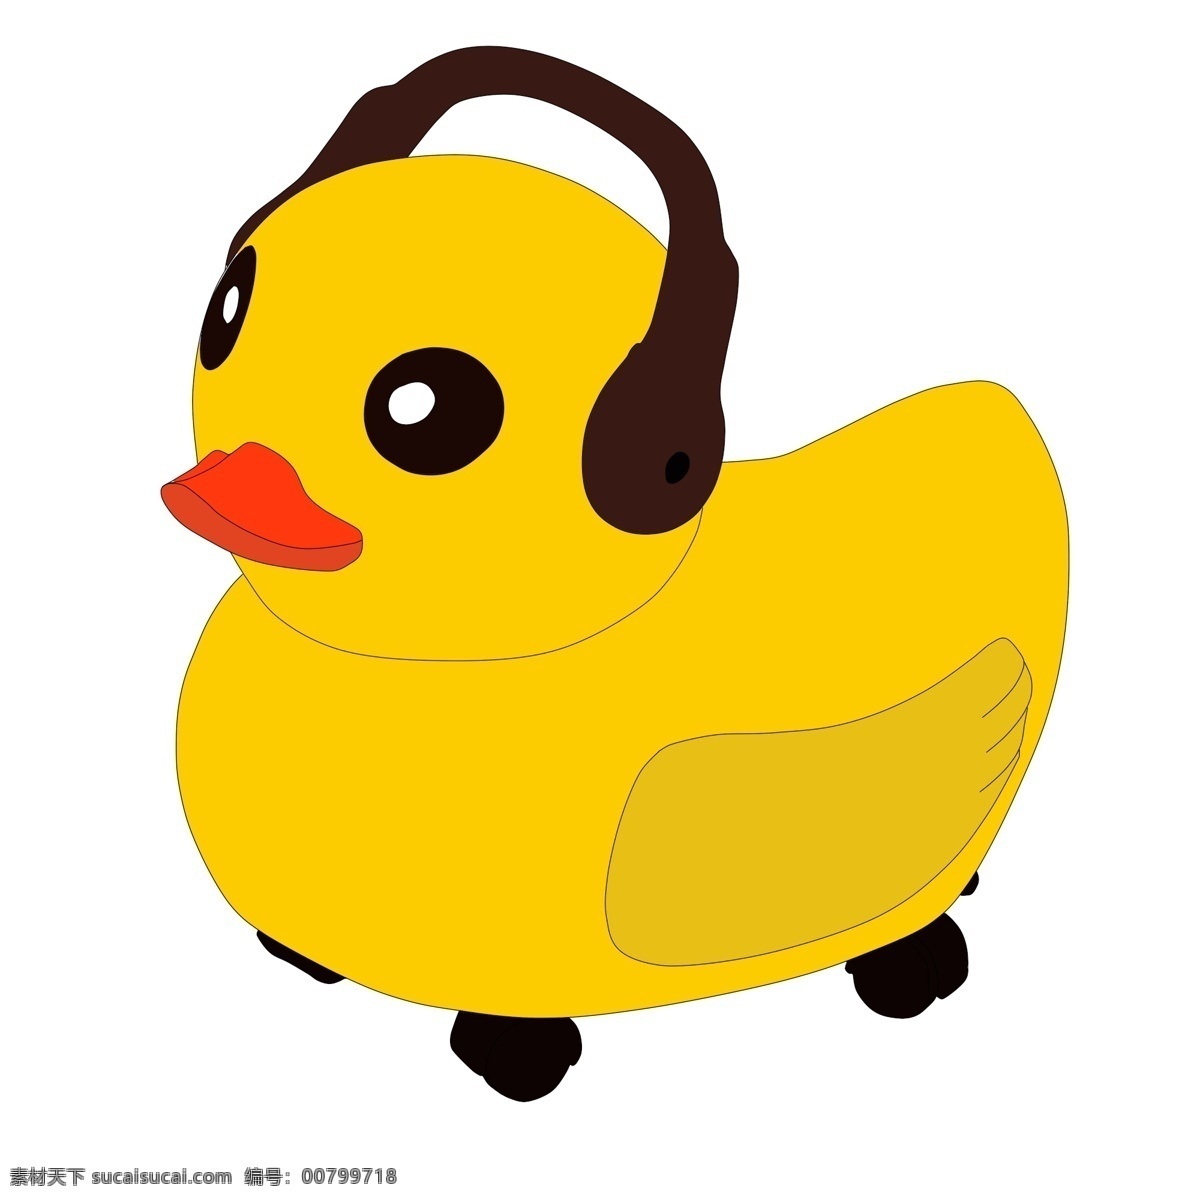 黄色 小鸭 玩具 插图 黄色的小鸭 婴儿玩具 漂亮 插画 棕色的手把 红色的嘴巴 卡通小鸭玩具